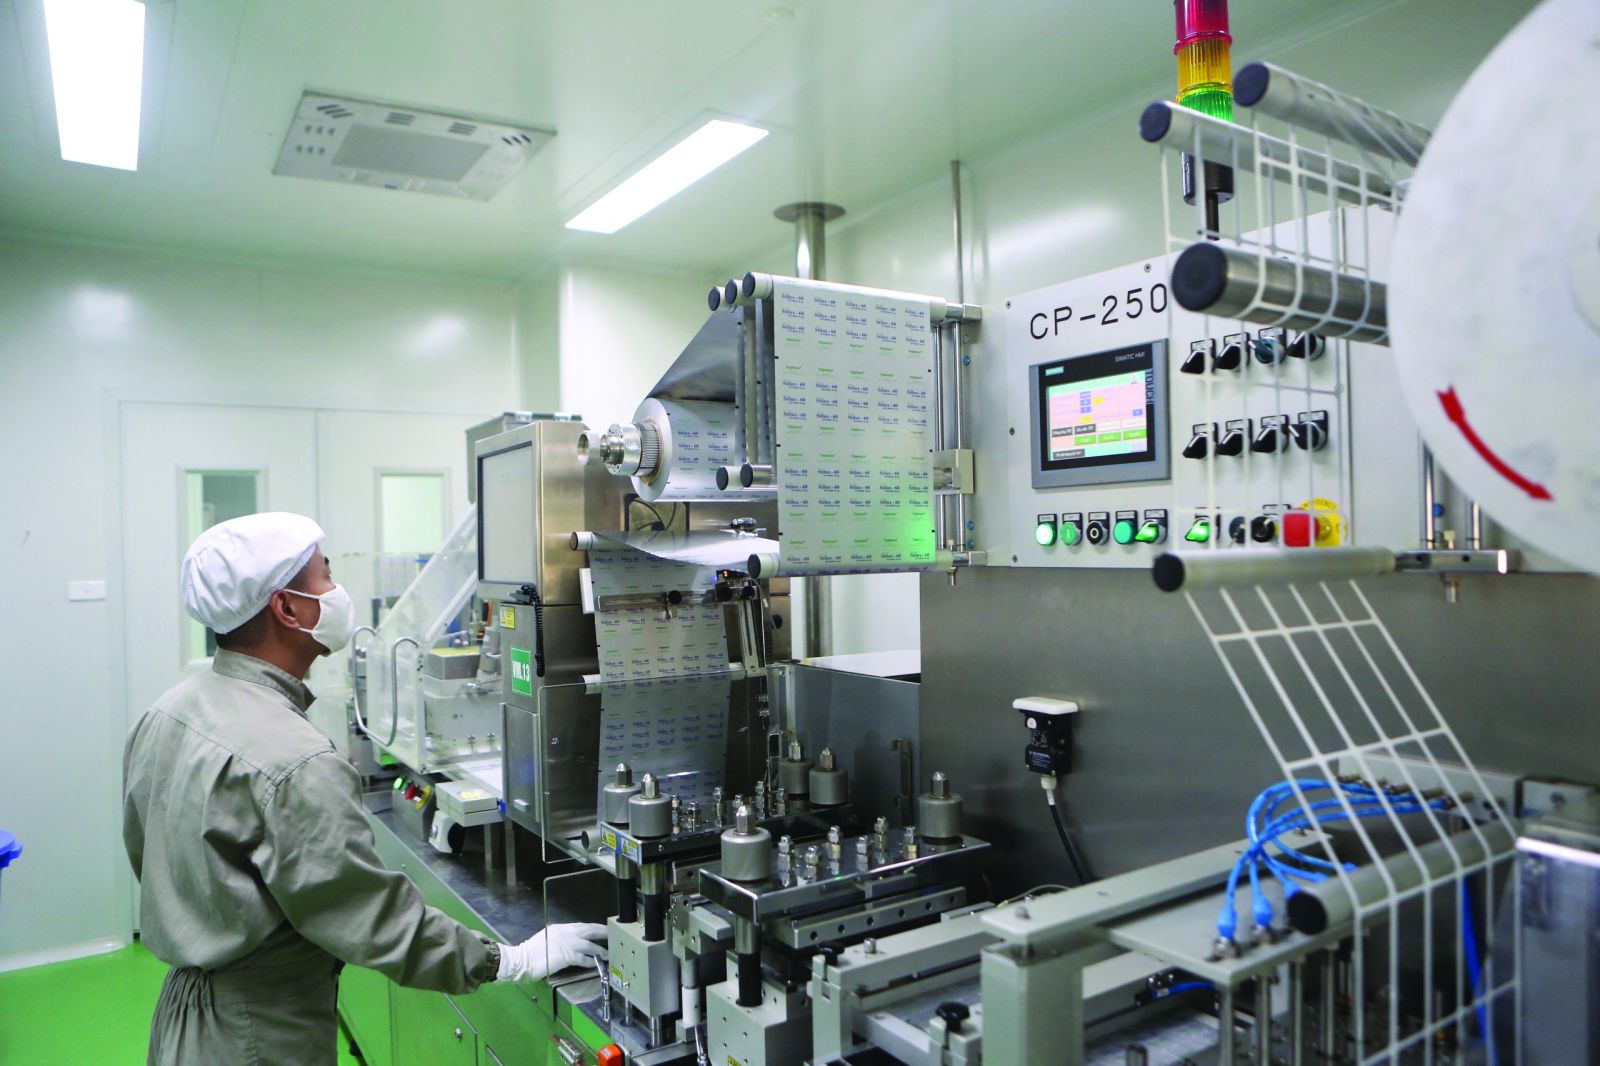  Dây chuyền sản xuất thuốc tại Nhà máy tân dược 4.0 của Traphaco.